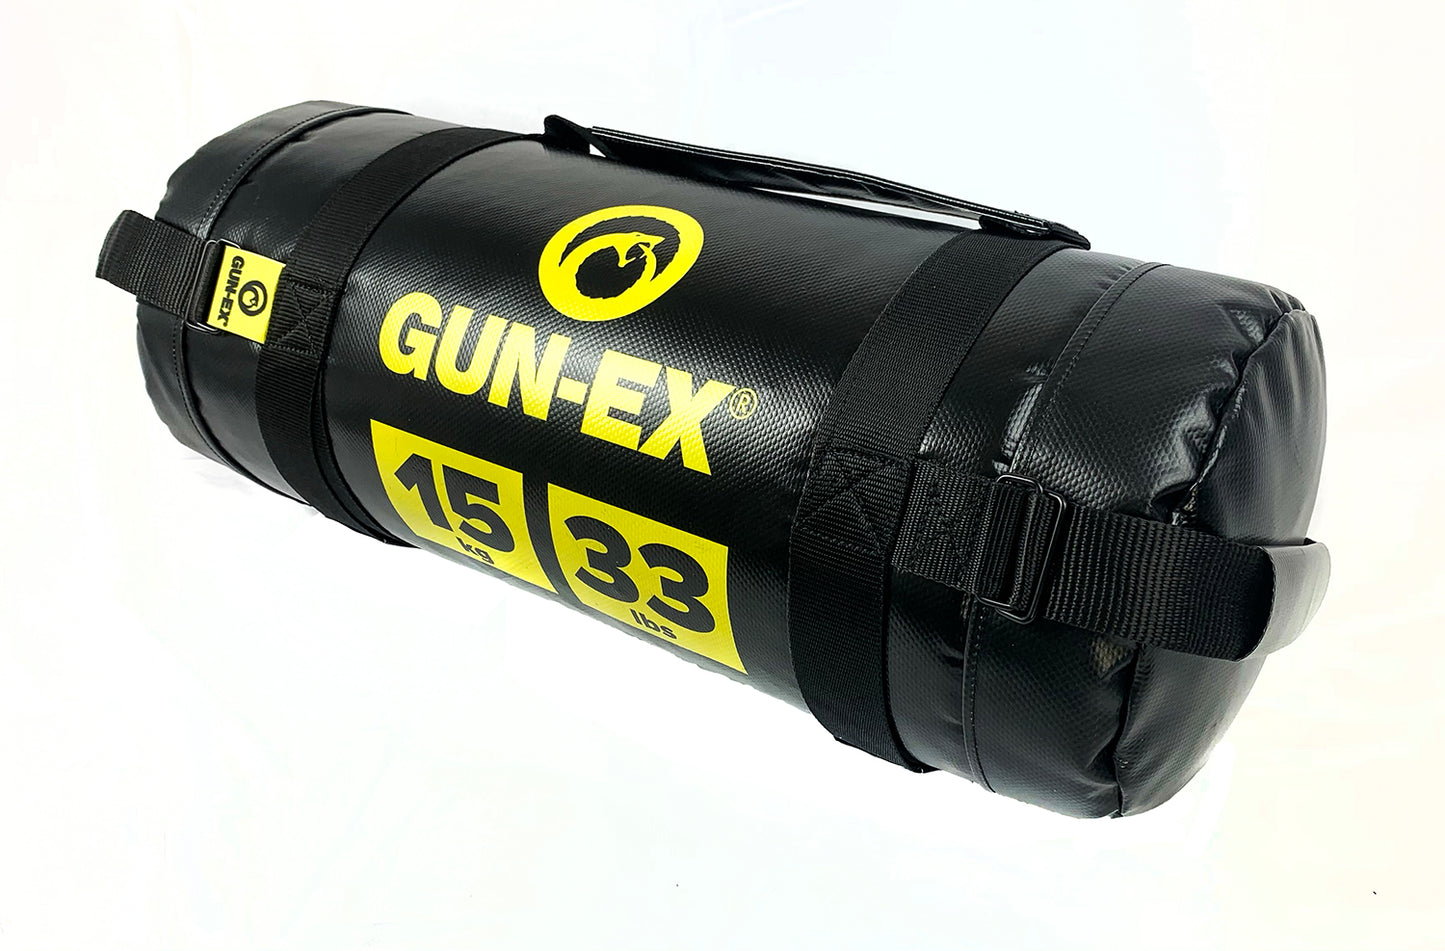 GUN-EX® POWER BAG